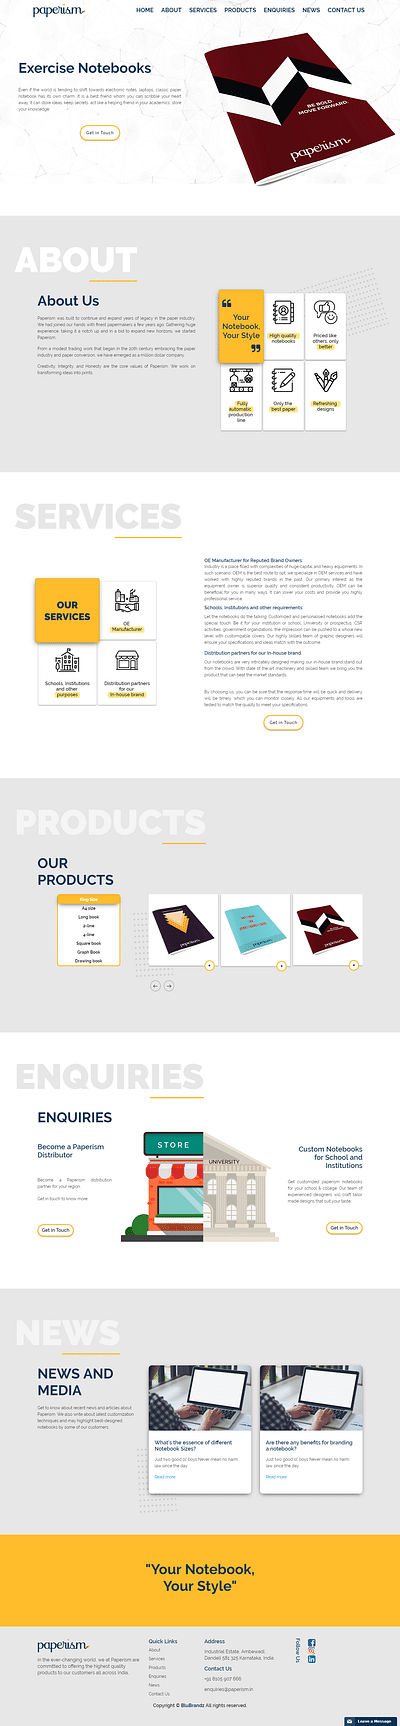 Website Designing for Paperism - Référencement naturel